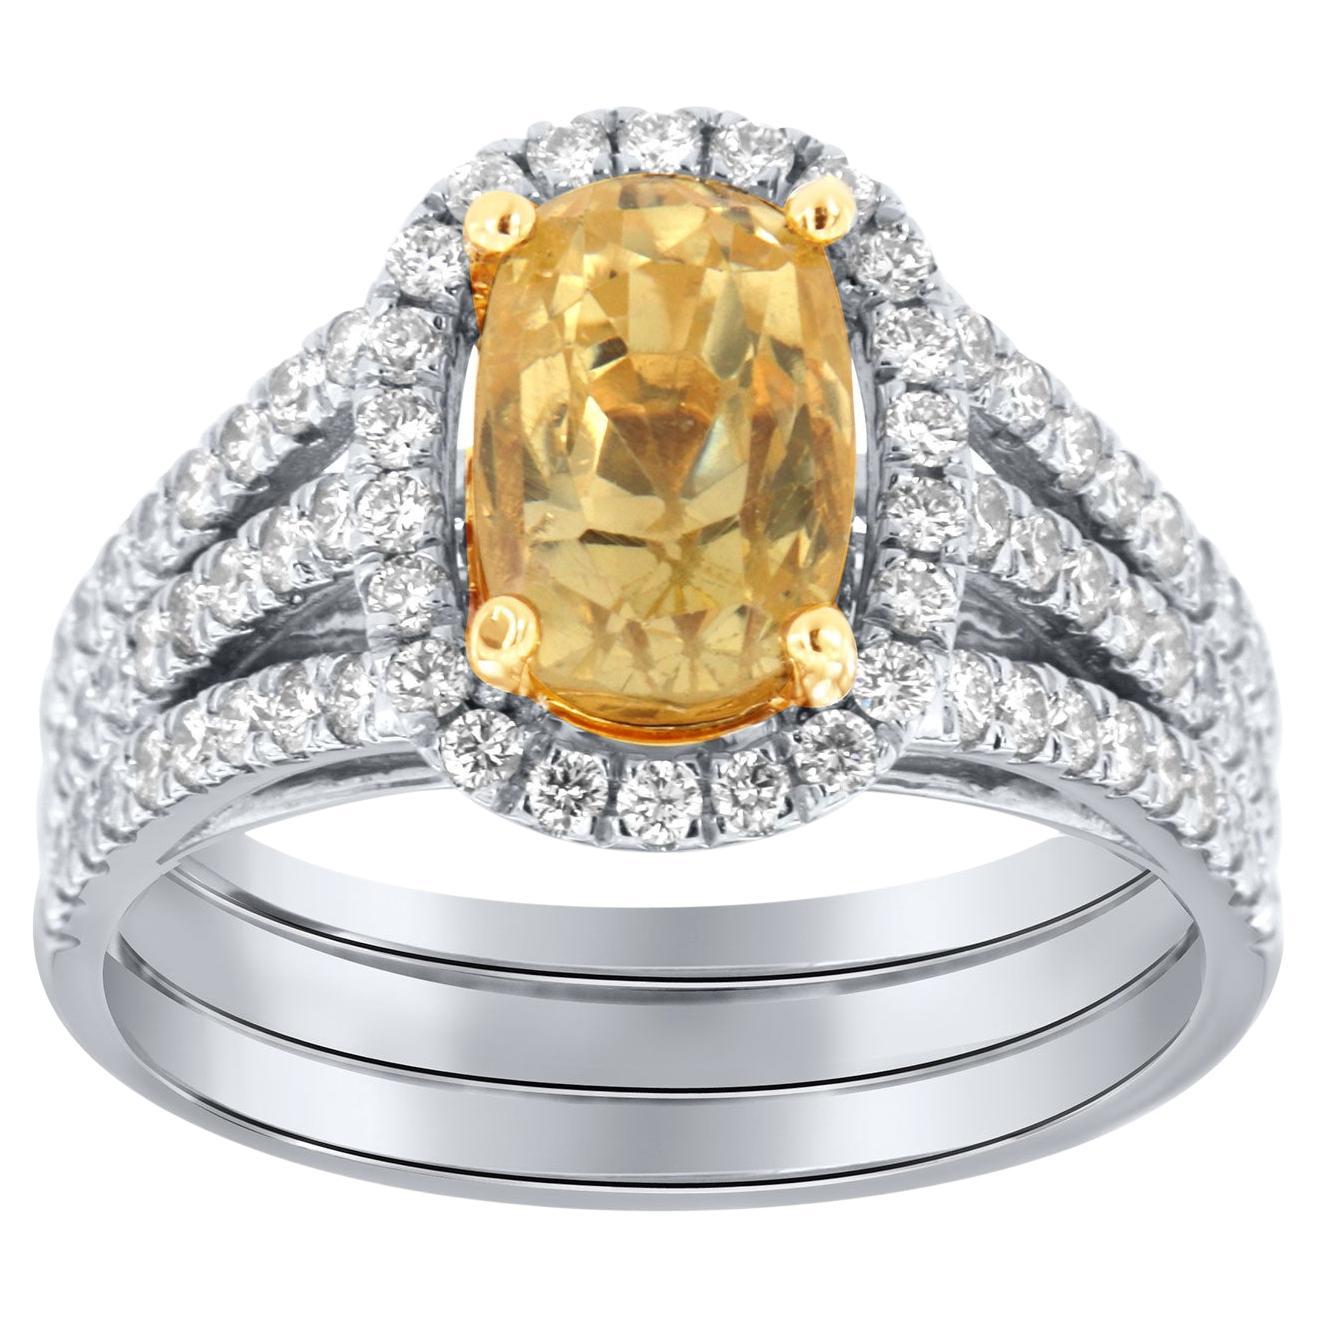 Bague en saphir jaune coussin ancien certifié GIA de 3,26 carats et halo de diamants